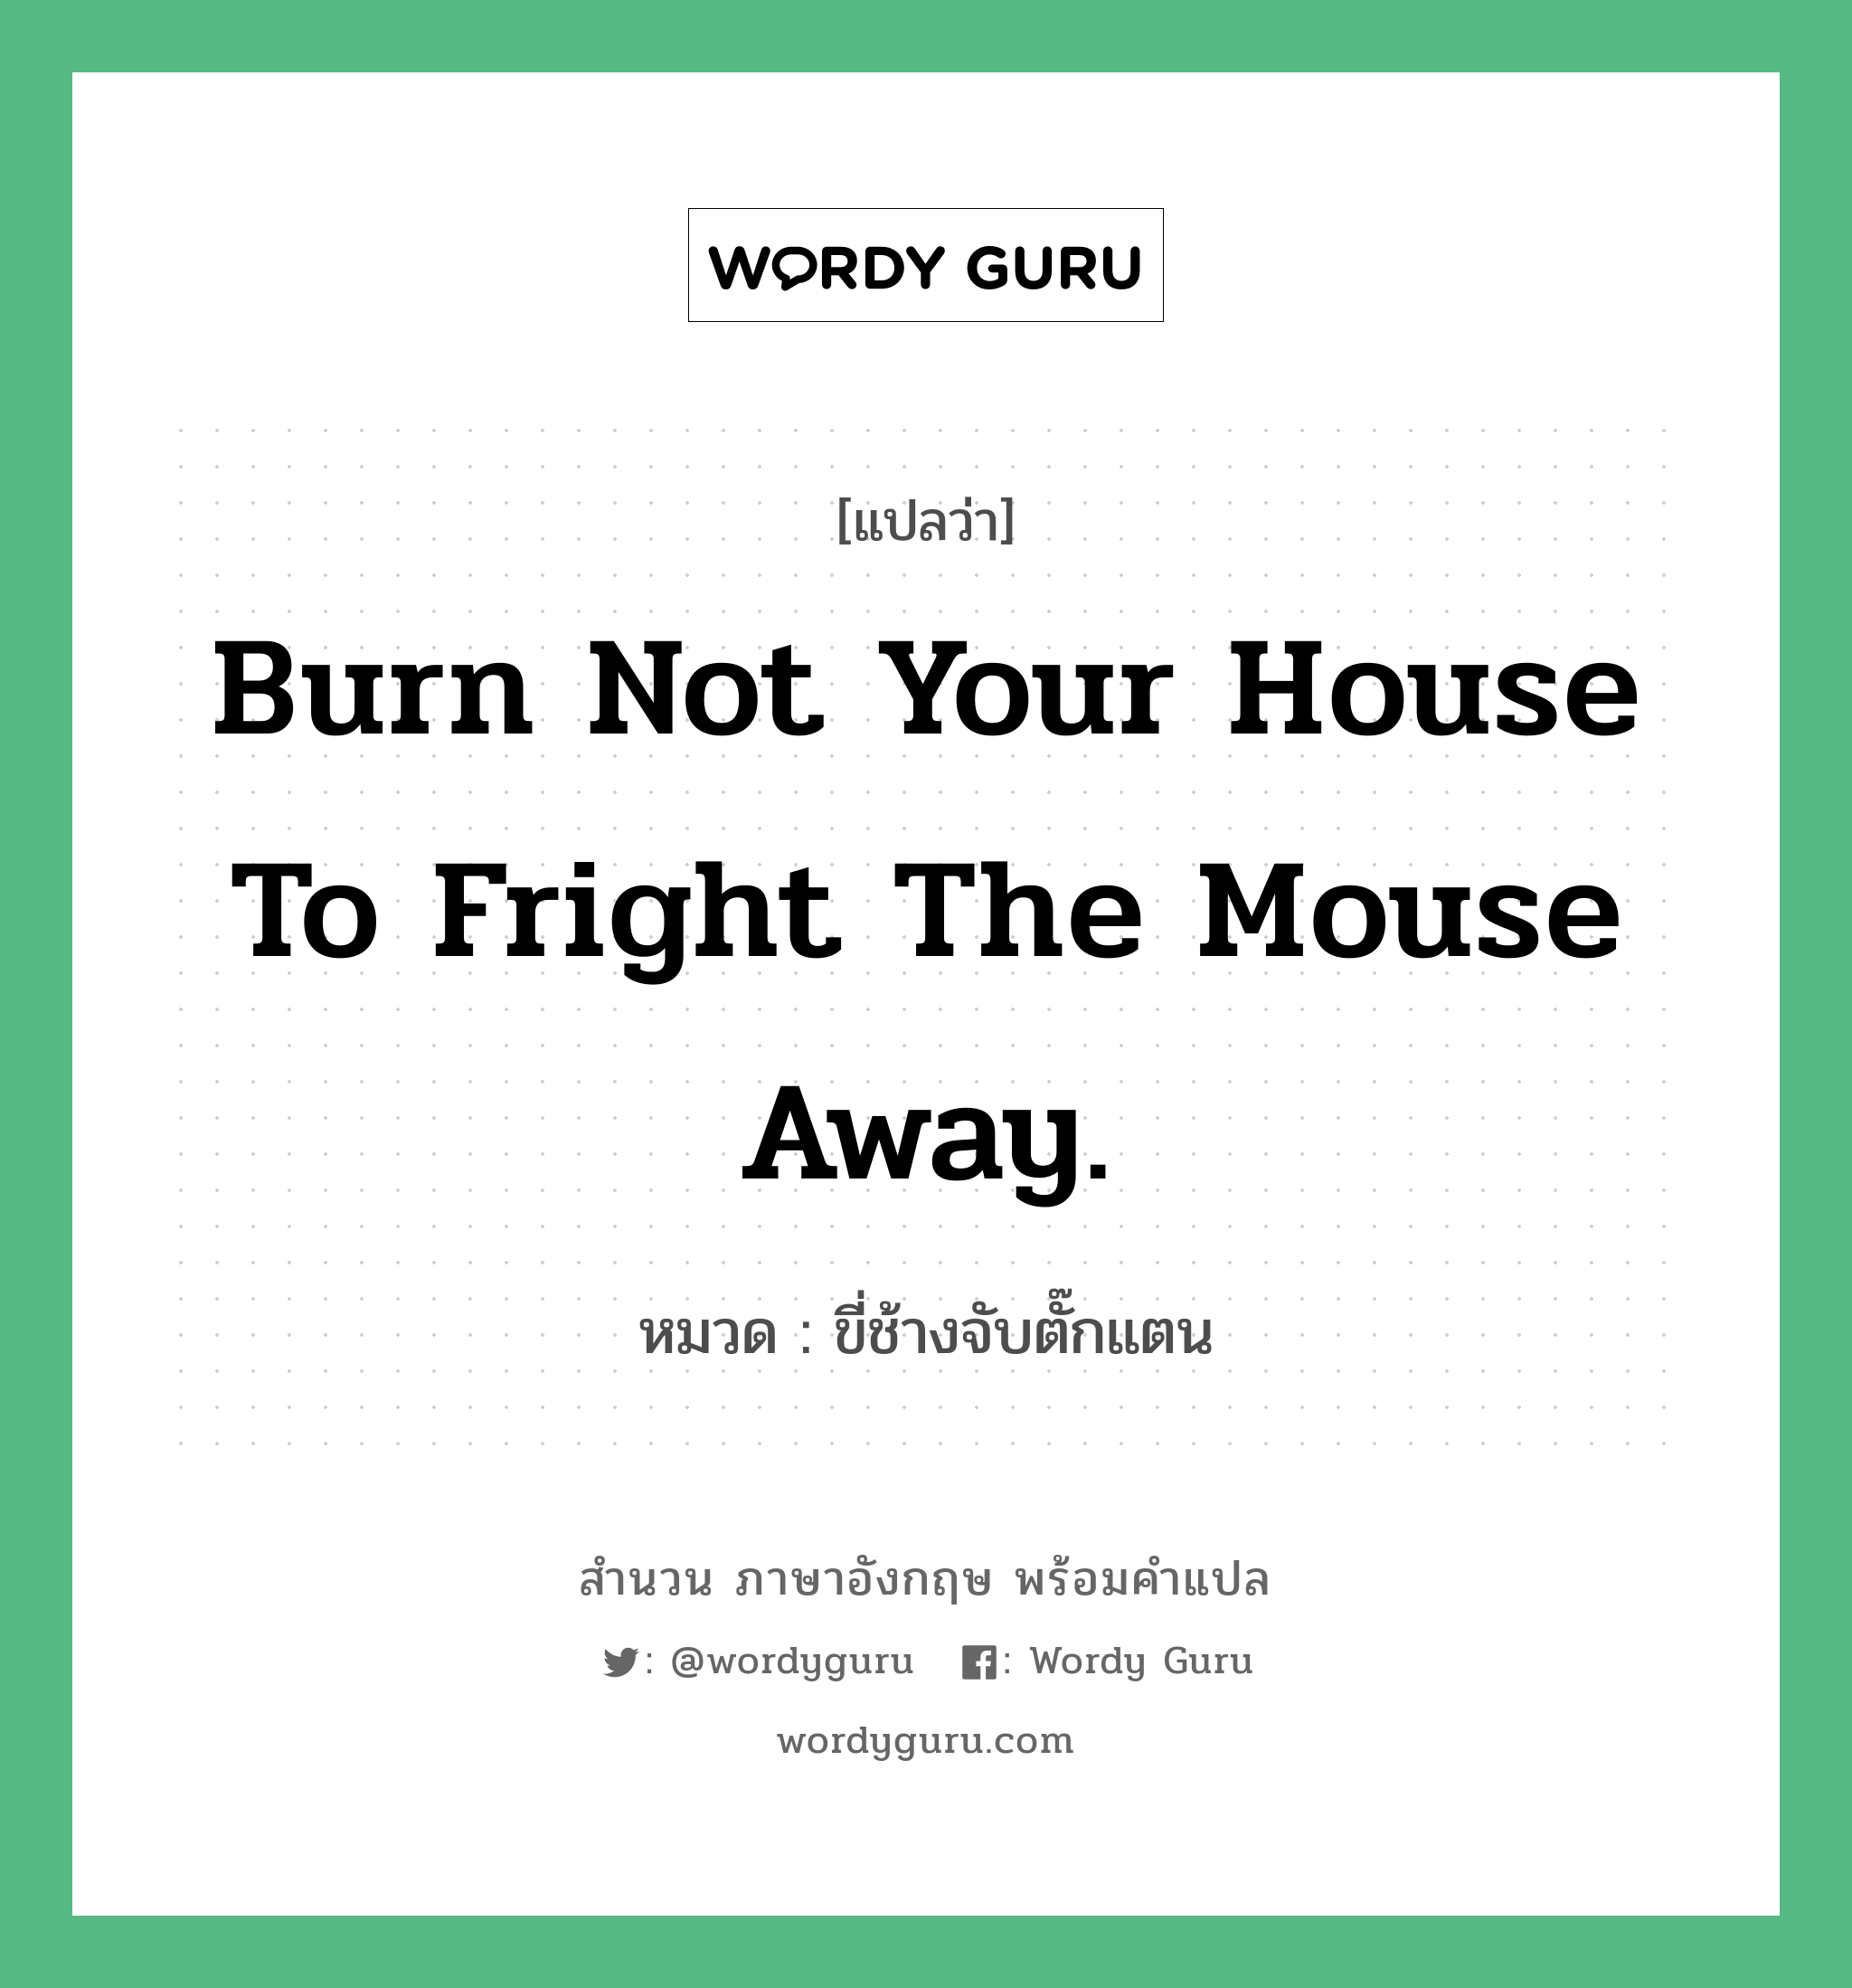 ขี่ช้างจับตั๊กแตน ภาษาอังกฤษ?, สำนวนภาษาอังกฤษ ขี่ช้างจับตั๊กแตน แปลว่า ขี่ช้างจับตั๊กแตน หมวด Burn not your house to fright the mouse away. คำสุภาษิต ภาษาอังกฤษ หมวด คำสุภาษิต ภาษาอังกฤษ